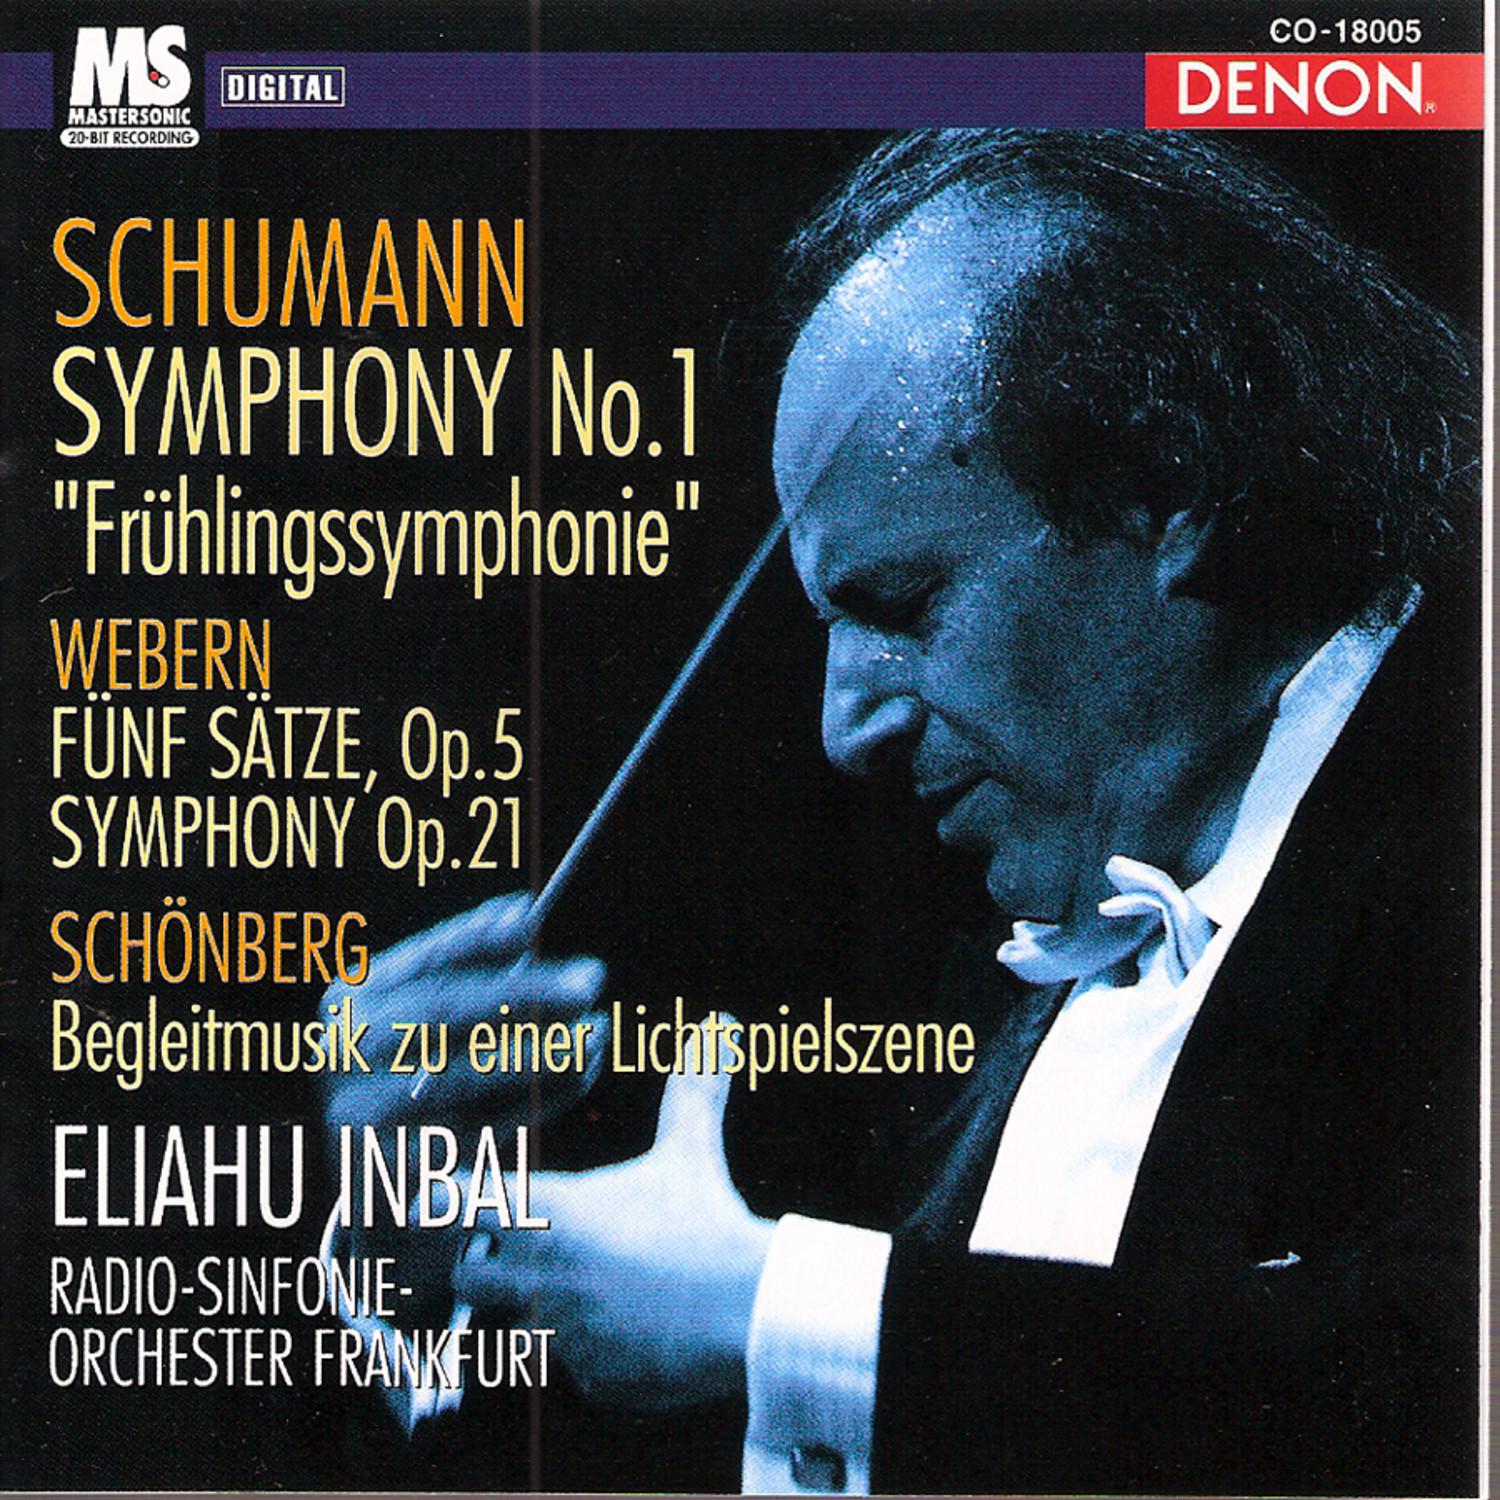 Schumann: Symphony " Frü hlingssymphonie" No. 1, Op. 38, Webern: Fü nf S tze, Op. 5  Symphony, Op. 21, Sch nberg: Begleitmusik zu einer Lichtspielszene